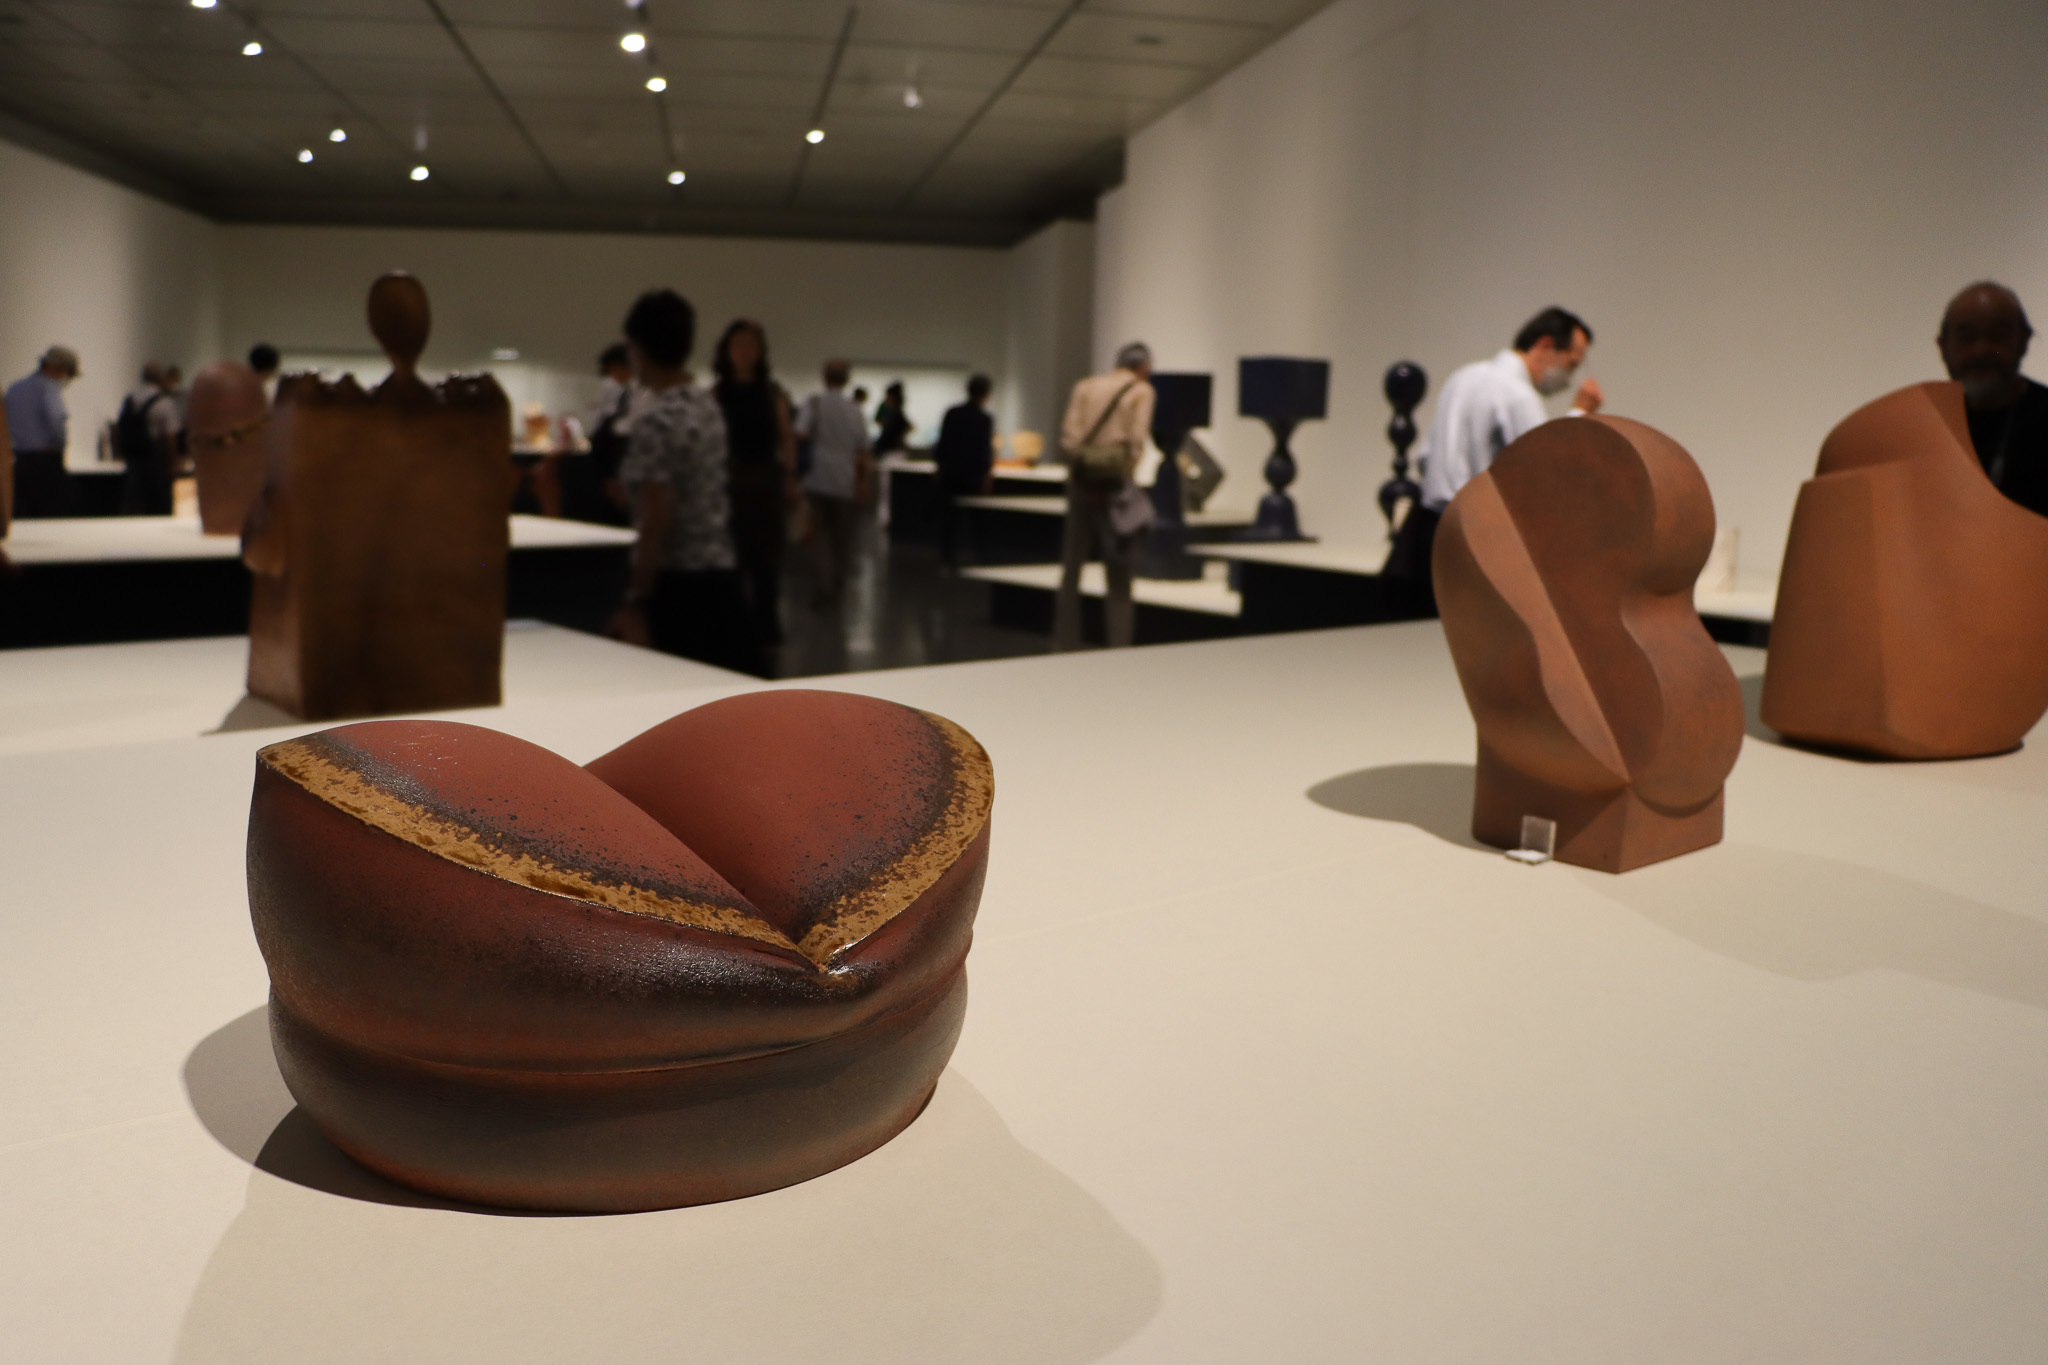 ふわふわの生地を陶芸で表現した林康夫「ホットケーキ」（1971年）和歌山県立近代美術館蔵